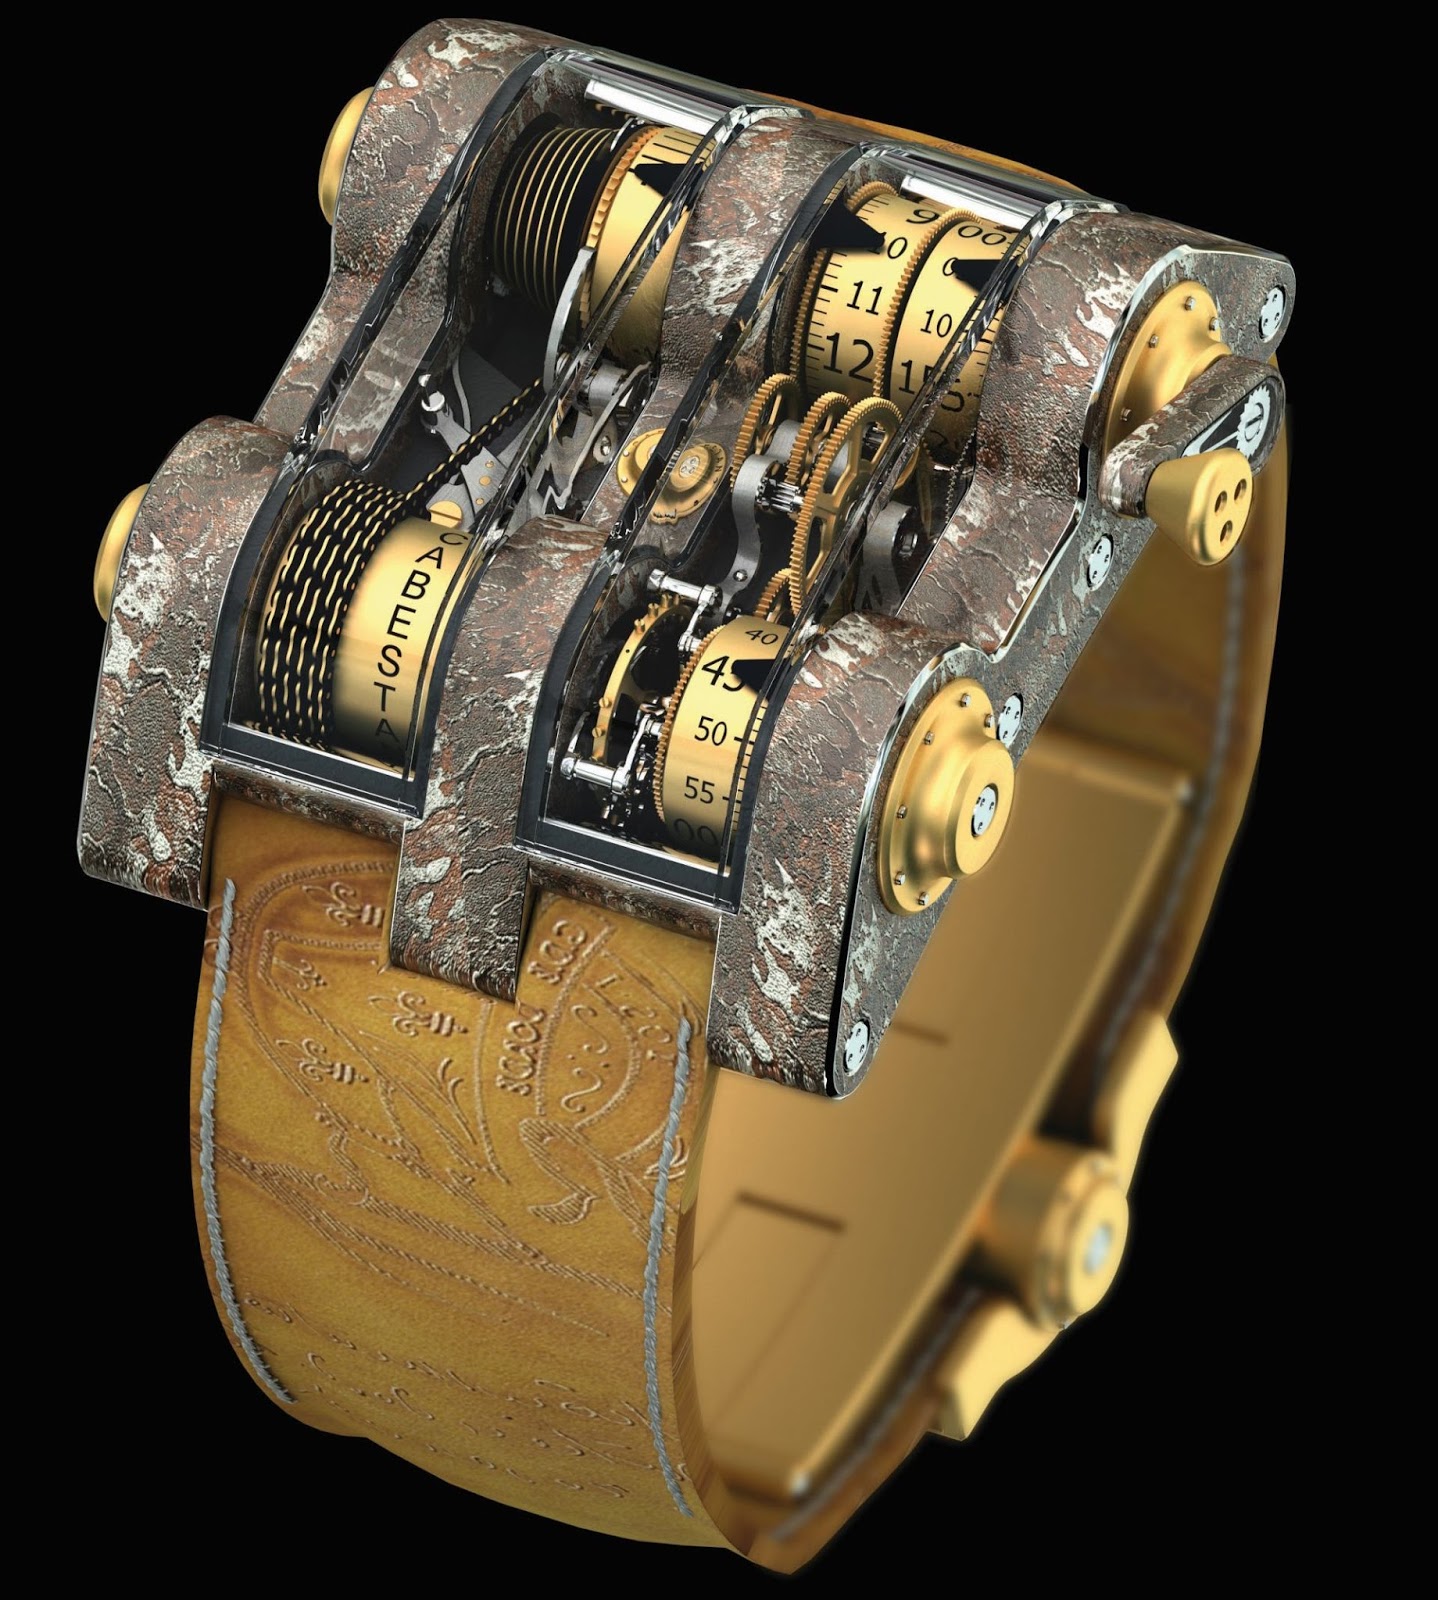 Бюджетные наручные часы. Romain Jerome Titanic DNA by Cabestan. Часы Cabestan. Romain Jerome Titanic watches. Необычные мужские часы.